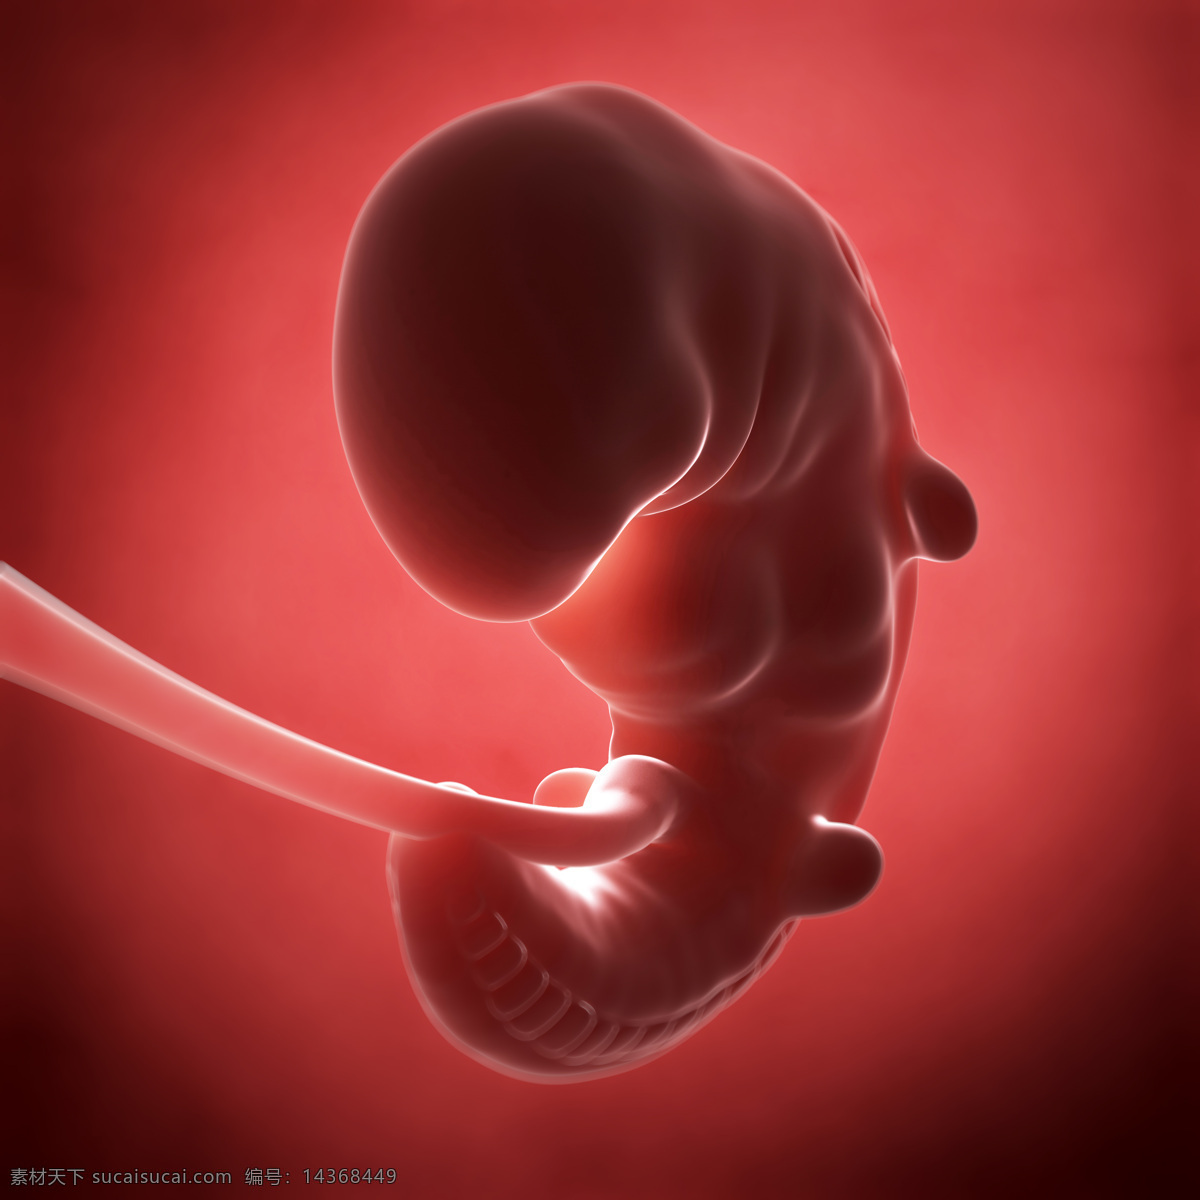 发育中的胚胎 唯美 炫酷 3d 胚胎 发育 婴儿 早期婴儿 初期婴儿 怀孕 子宫里的婴儿 产科 妇产科 早期胚胎 科学 医疗 生命延续 繁殖 3d设计